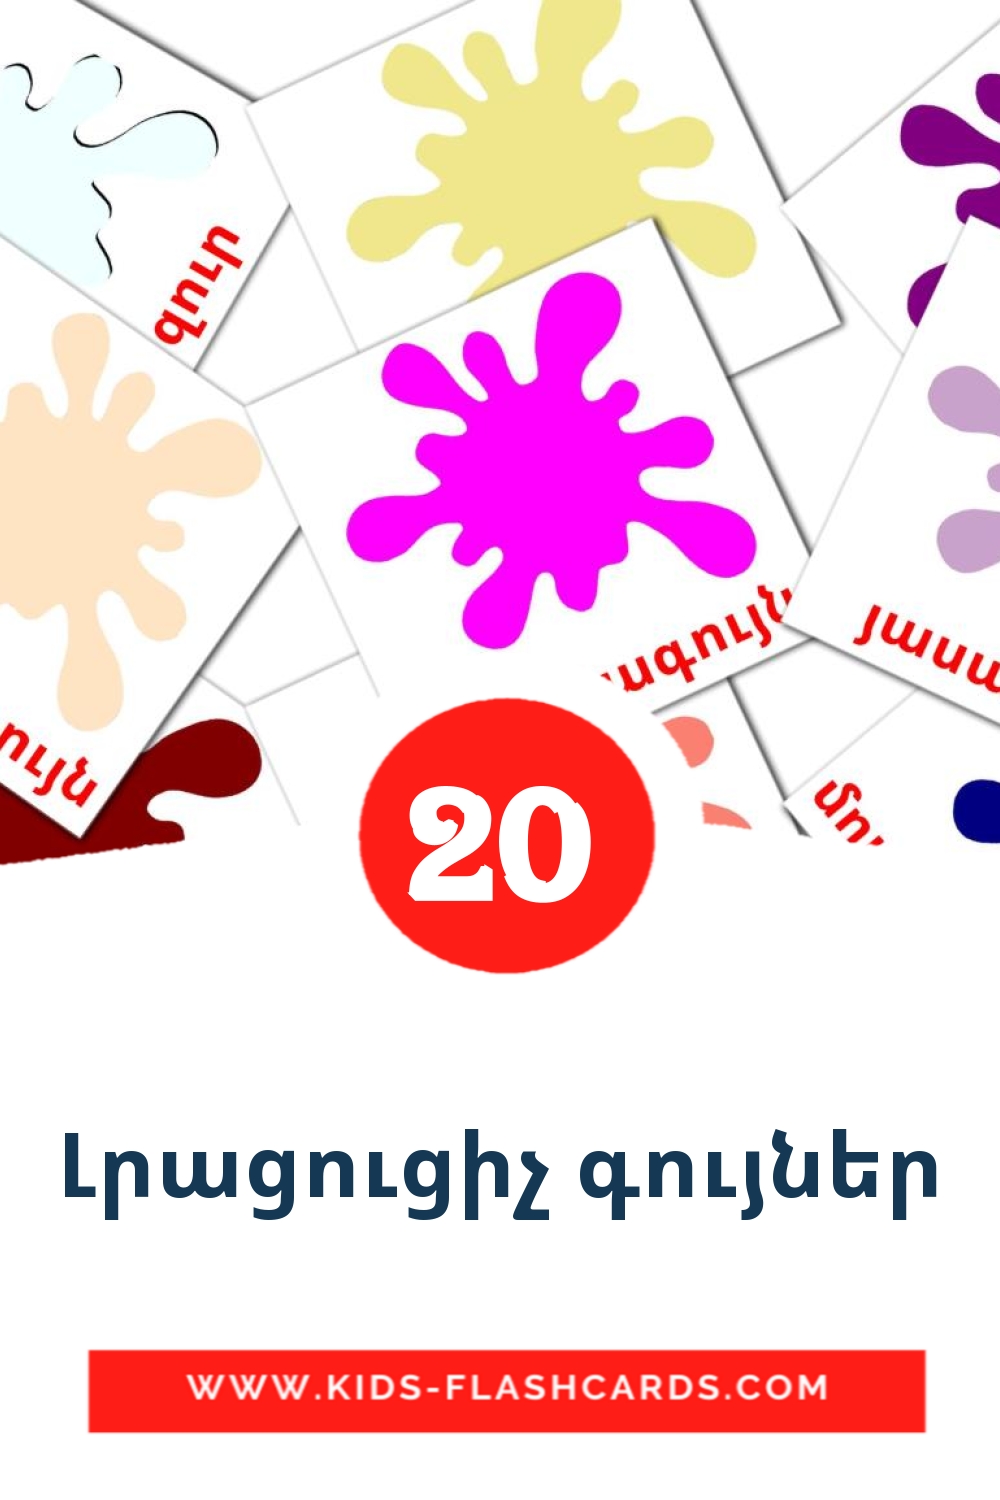 20 Cartões com Imagens de Լրացուցիչ գույներ para Jardim de Infância em armênio